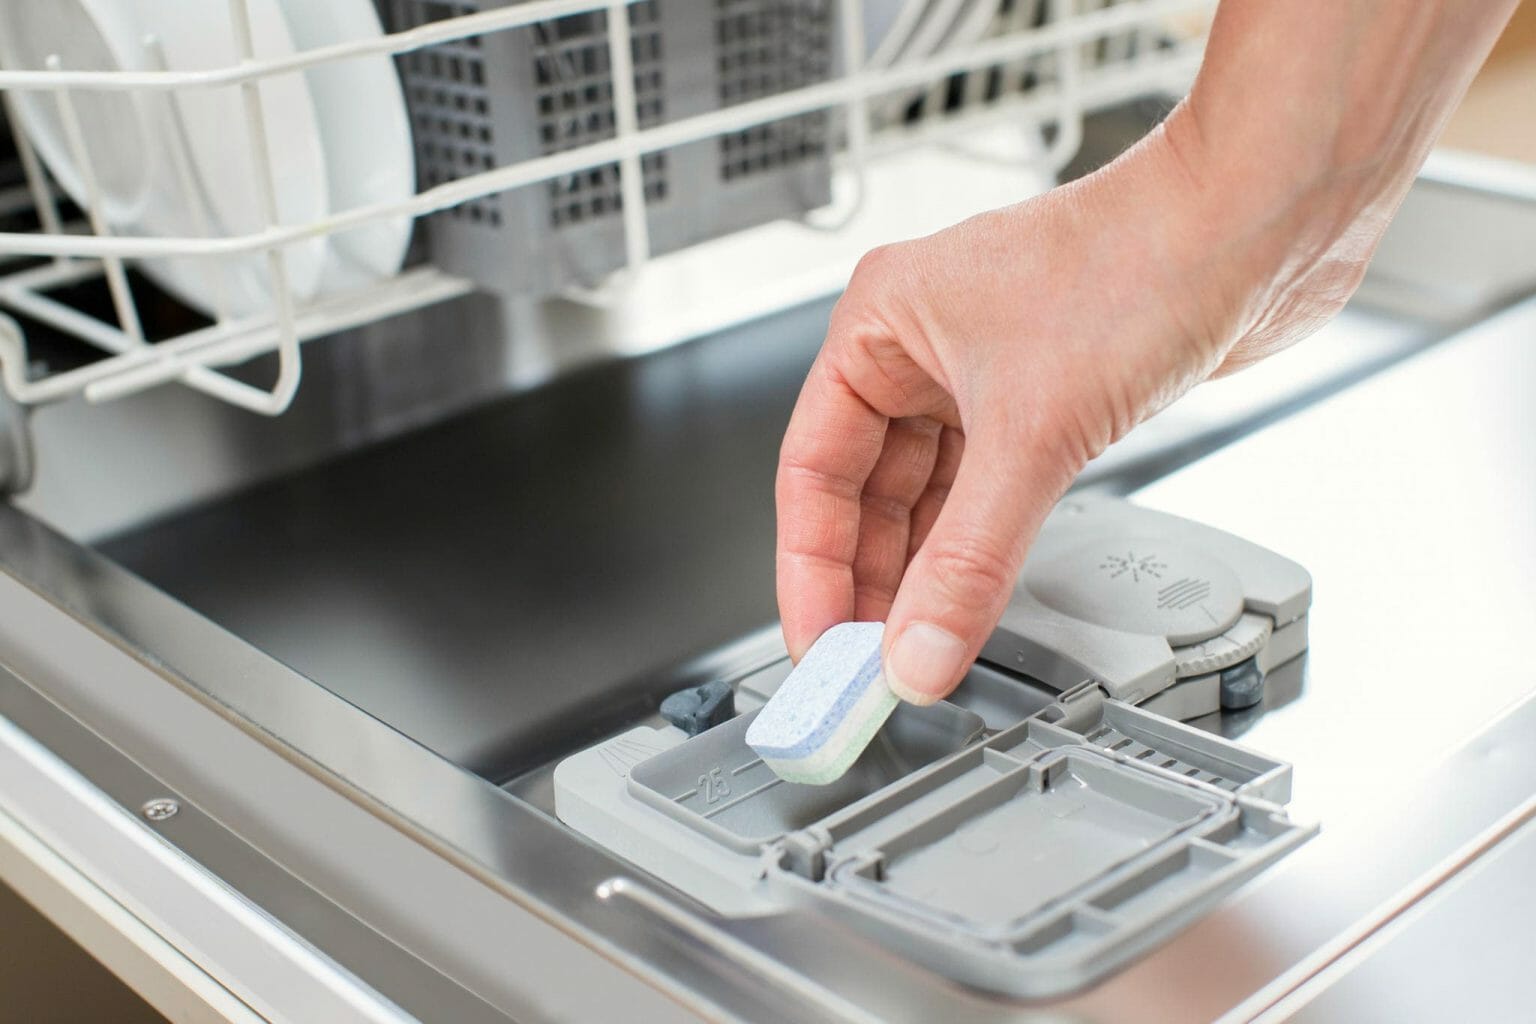 Почему в посудомоечной машине не растворяется таблетка